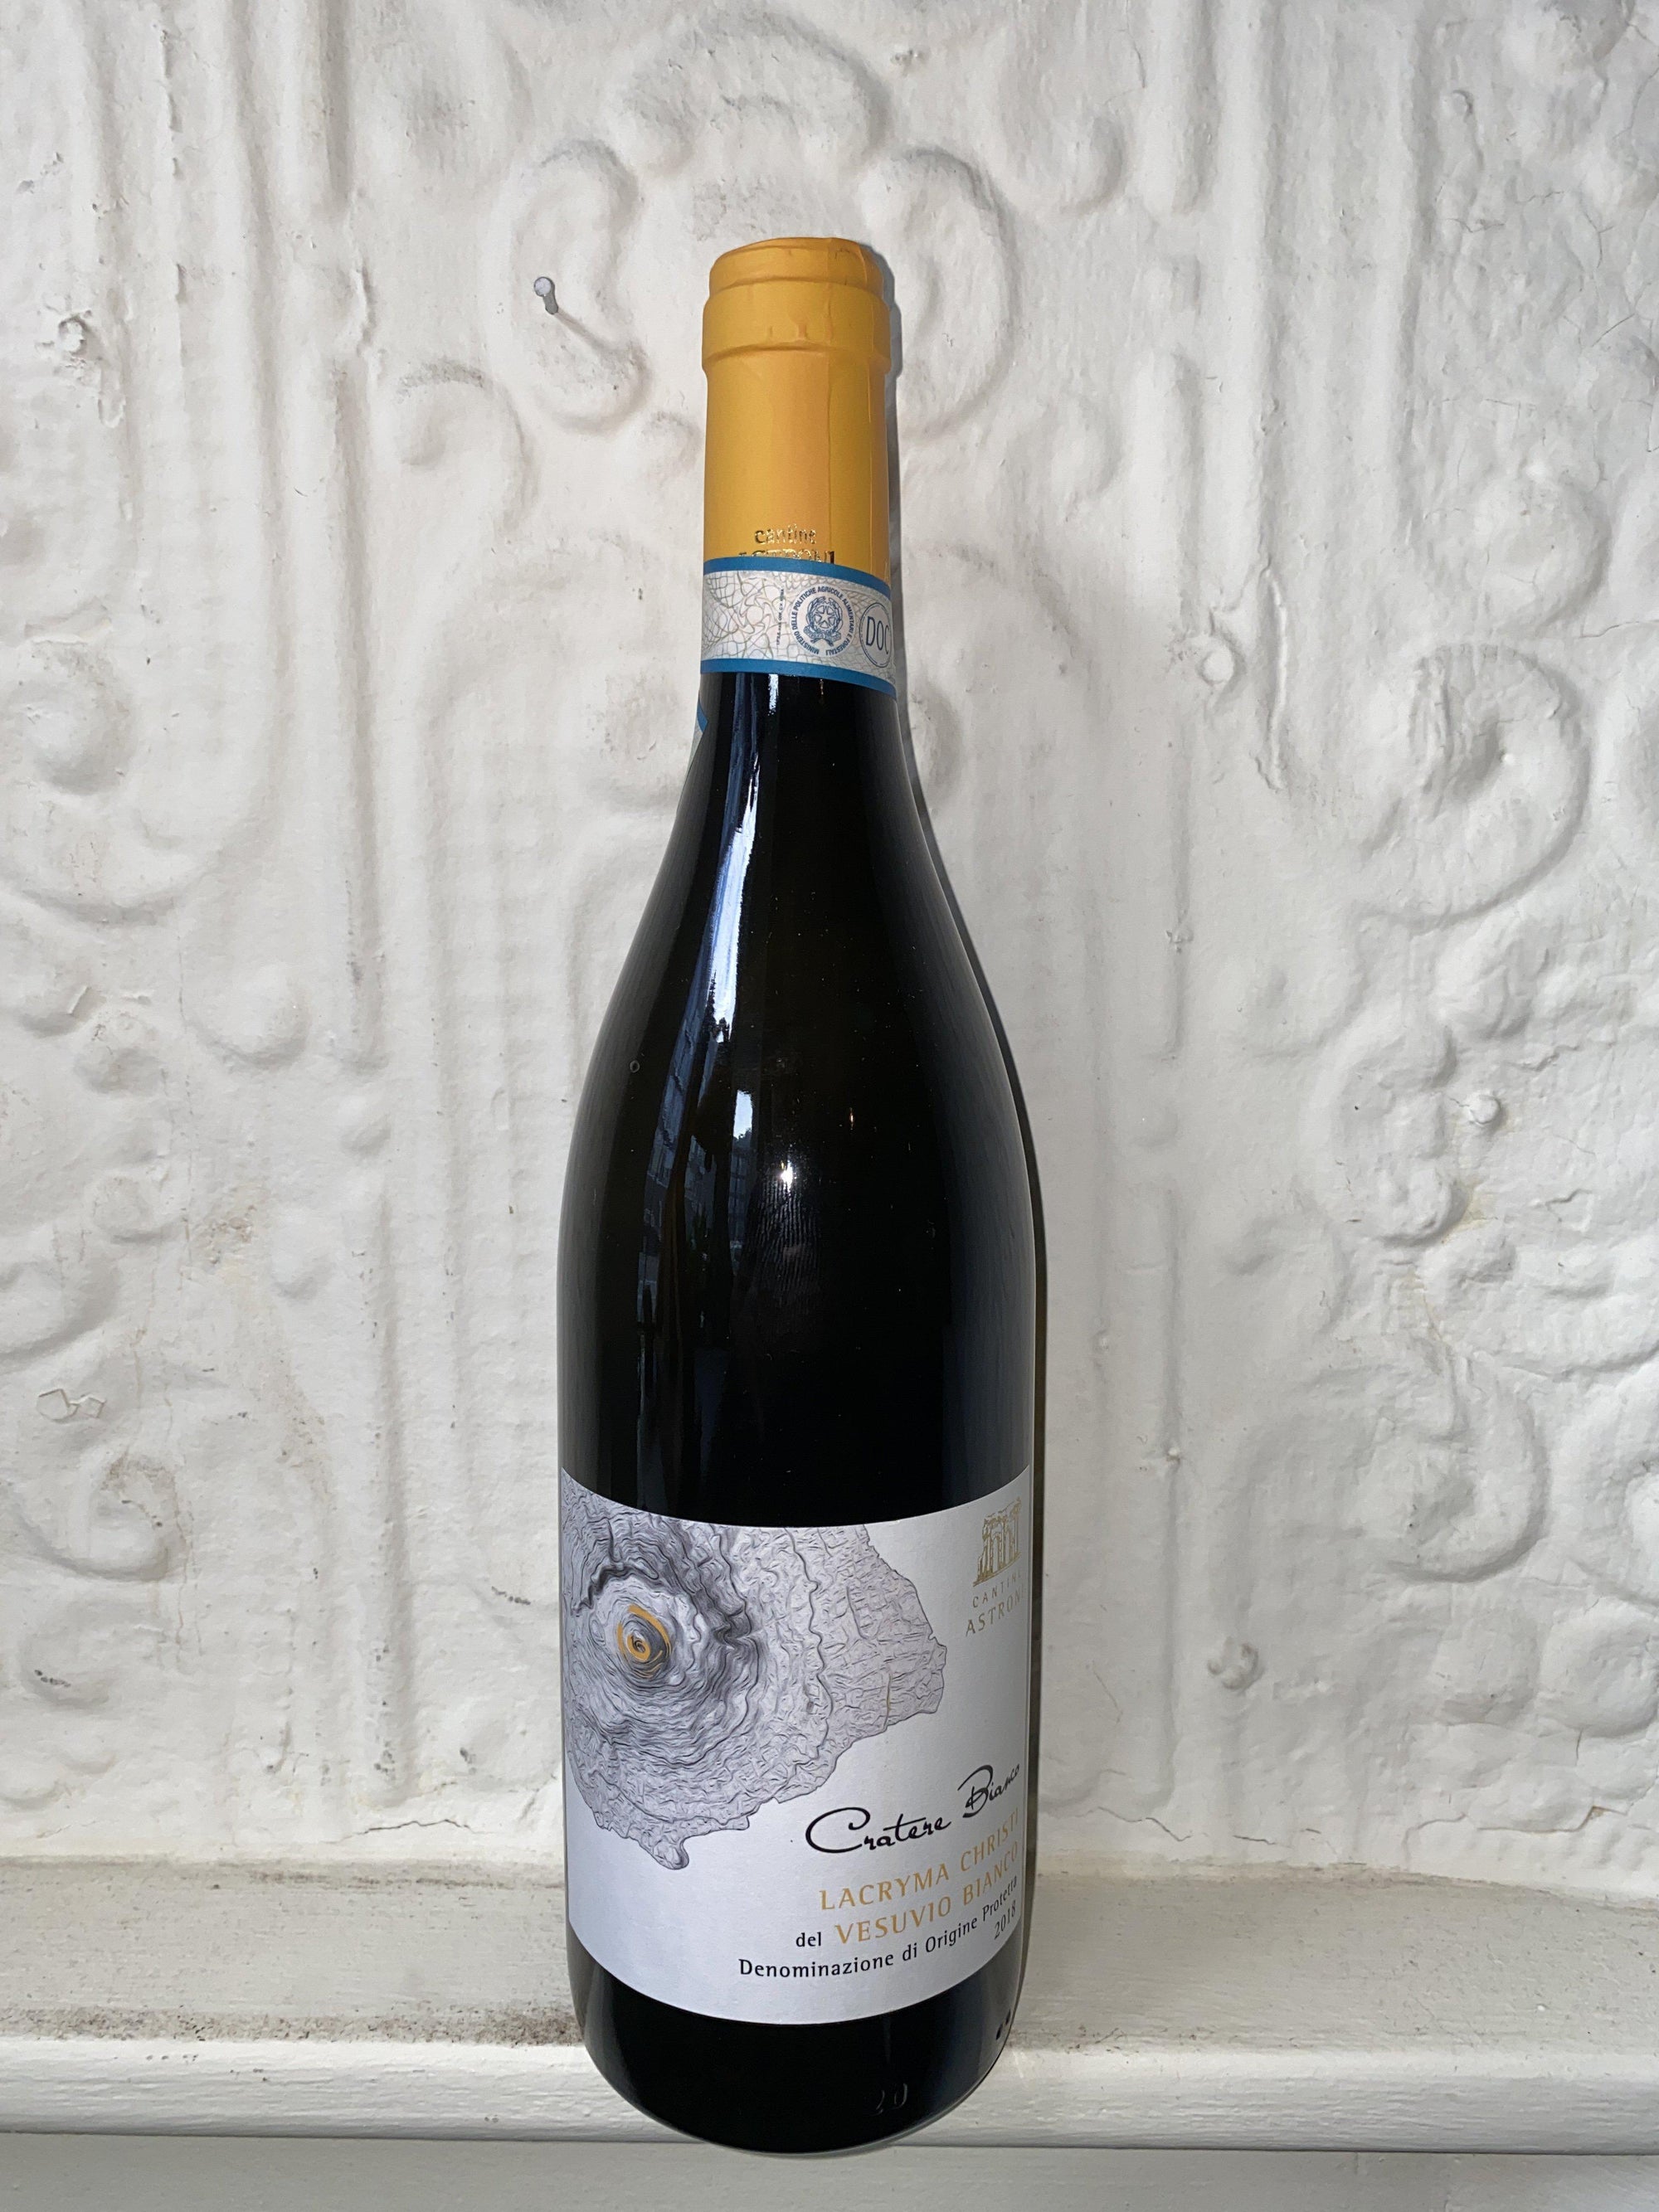 Lacryma Christi del Vesuvio Cratere Bianco, Cantine Astroni 2018 (Campania, Italy)-Wine-Bibber & Bell